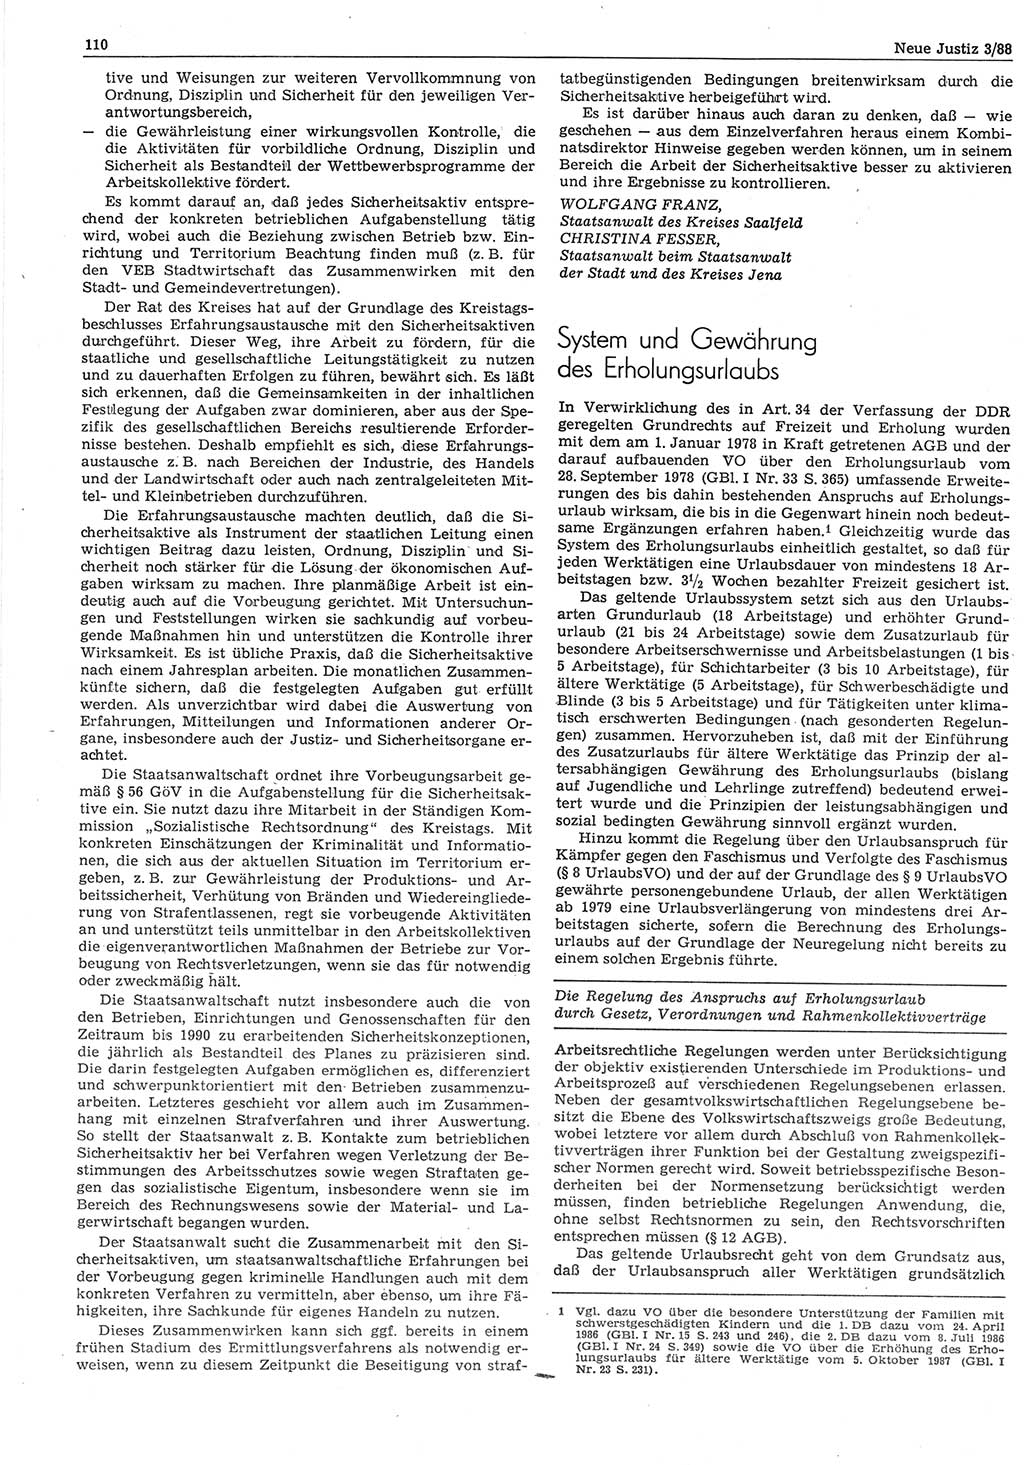 Neue Justiz (NJ), Zeitschrift für sozialistisches Recht und Gesetzlichkeit [Deutsche Demokratische Republik (DDR)], 42. Jahrgang 1988, Seite 110 (NJ DDR 1988, S. 110)